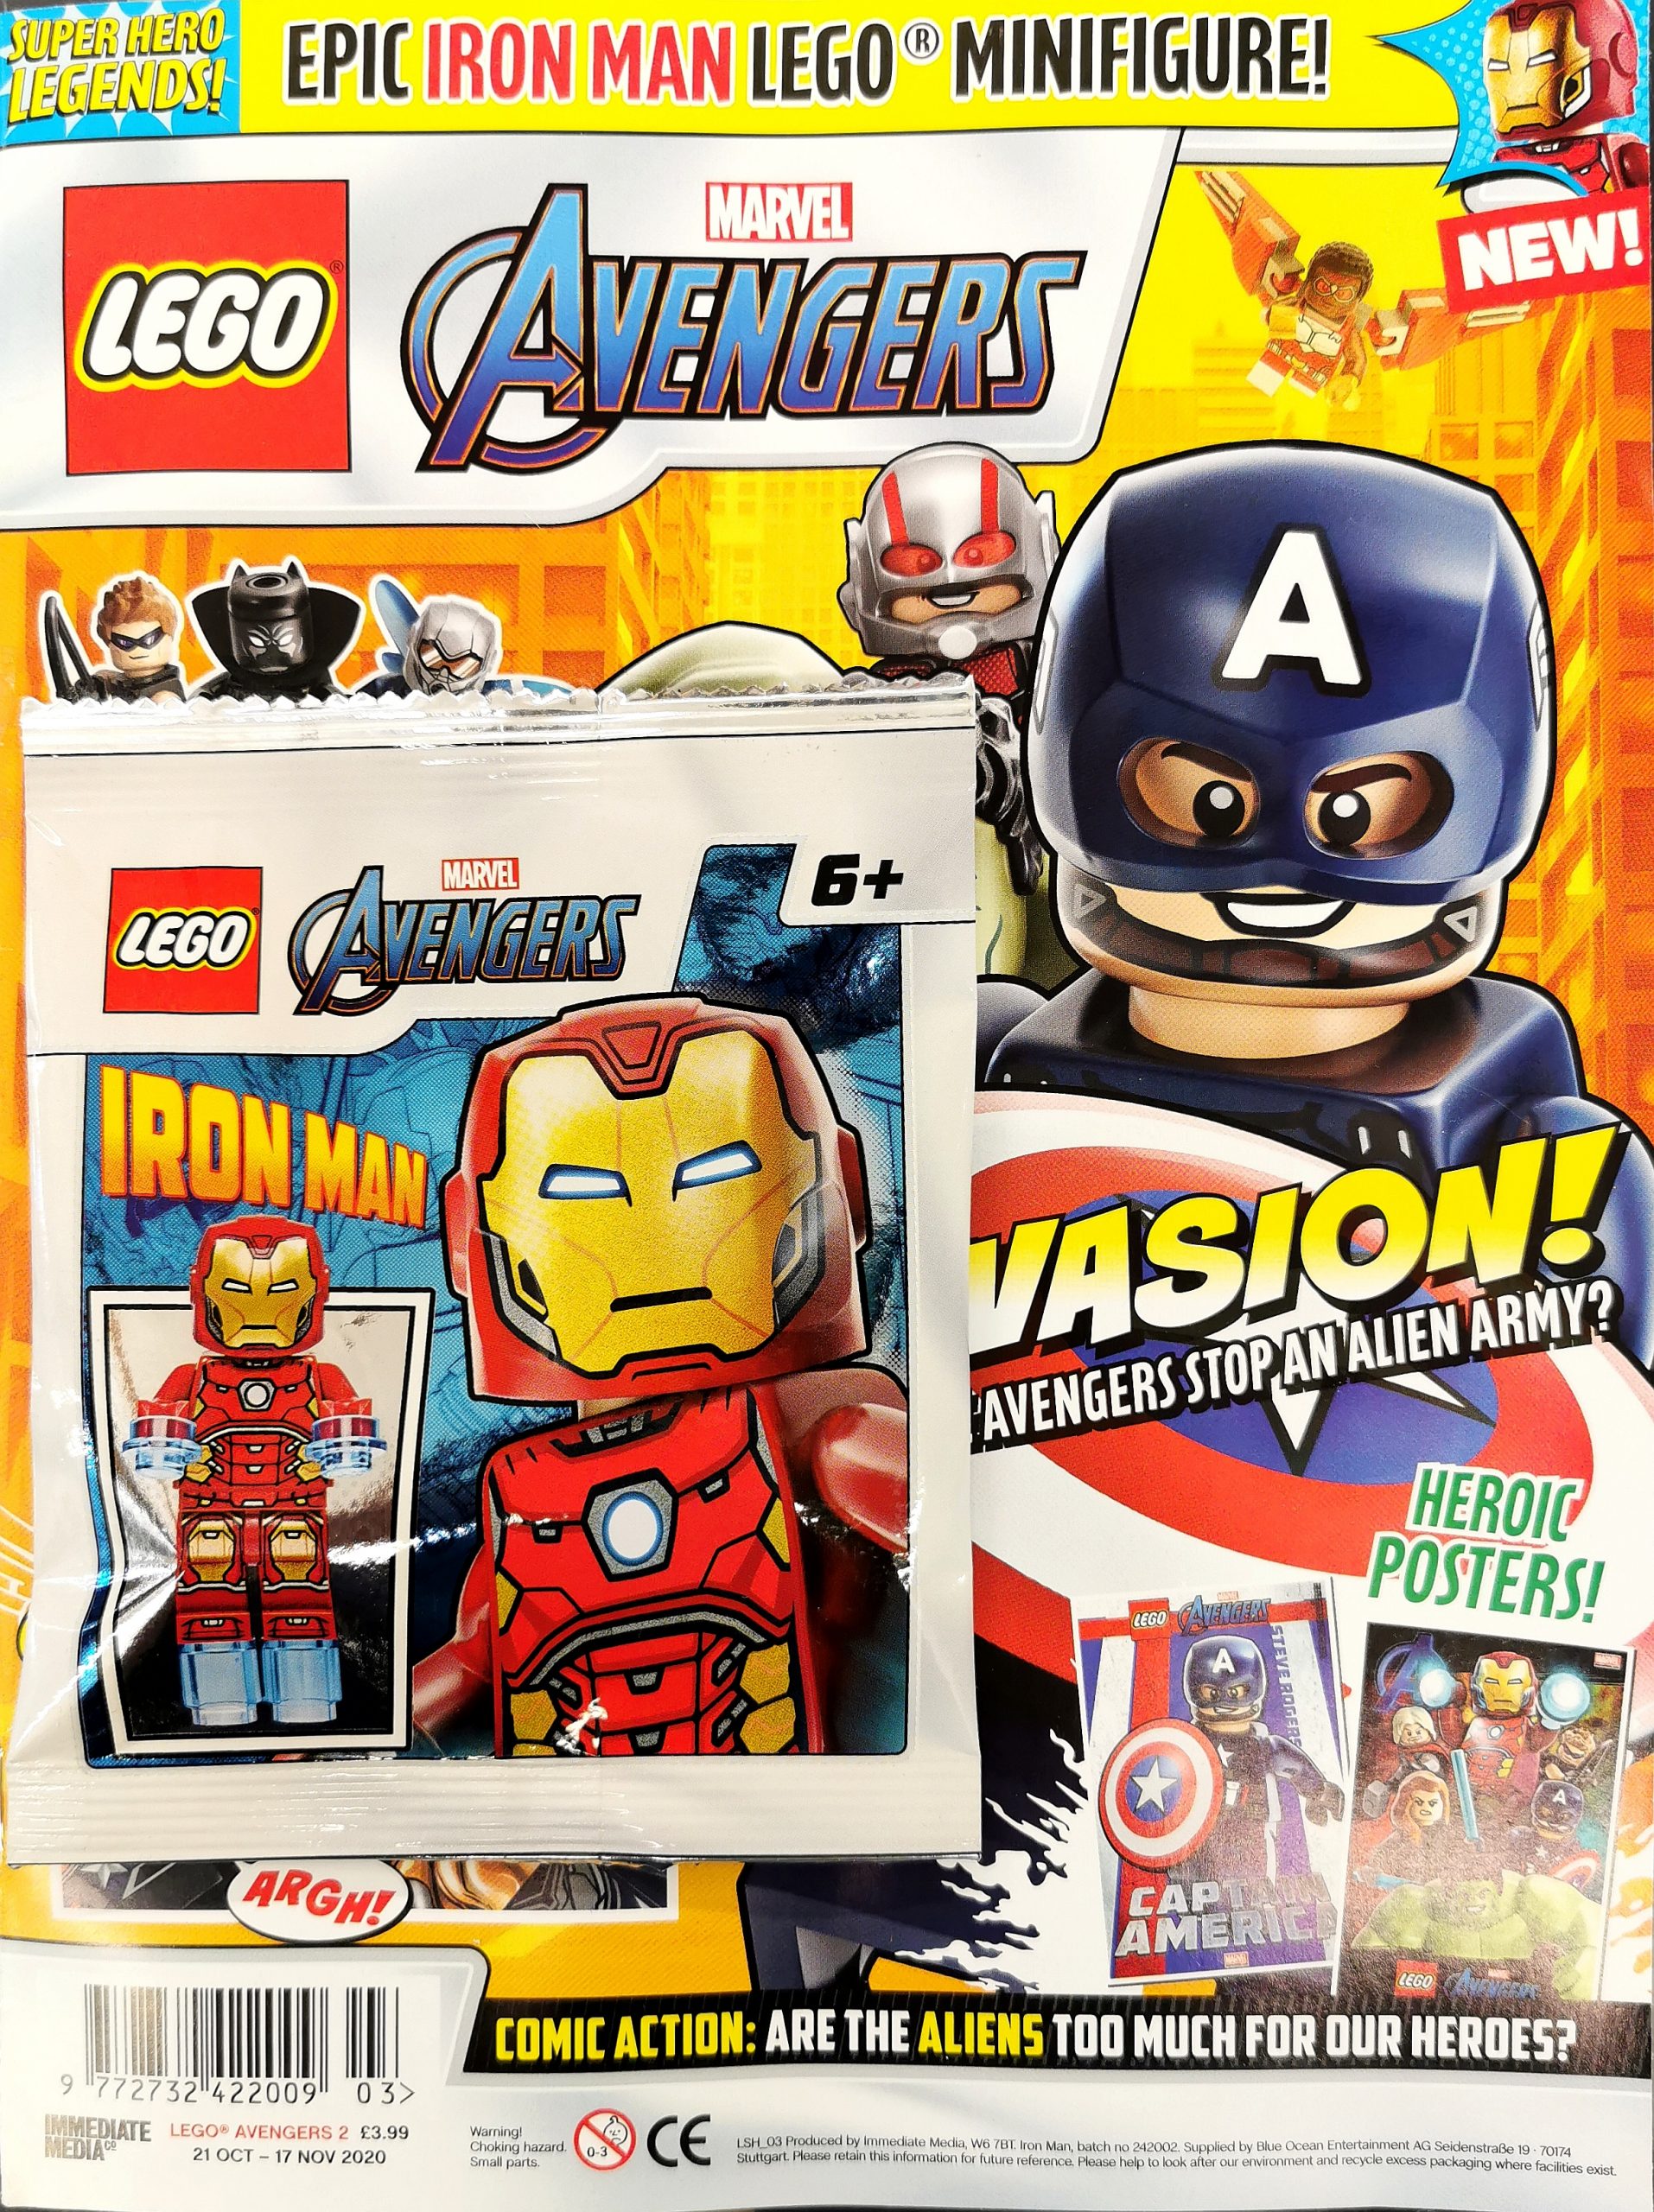 Lego avengers magazine